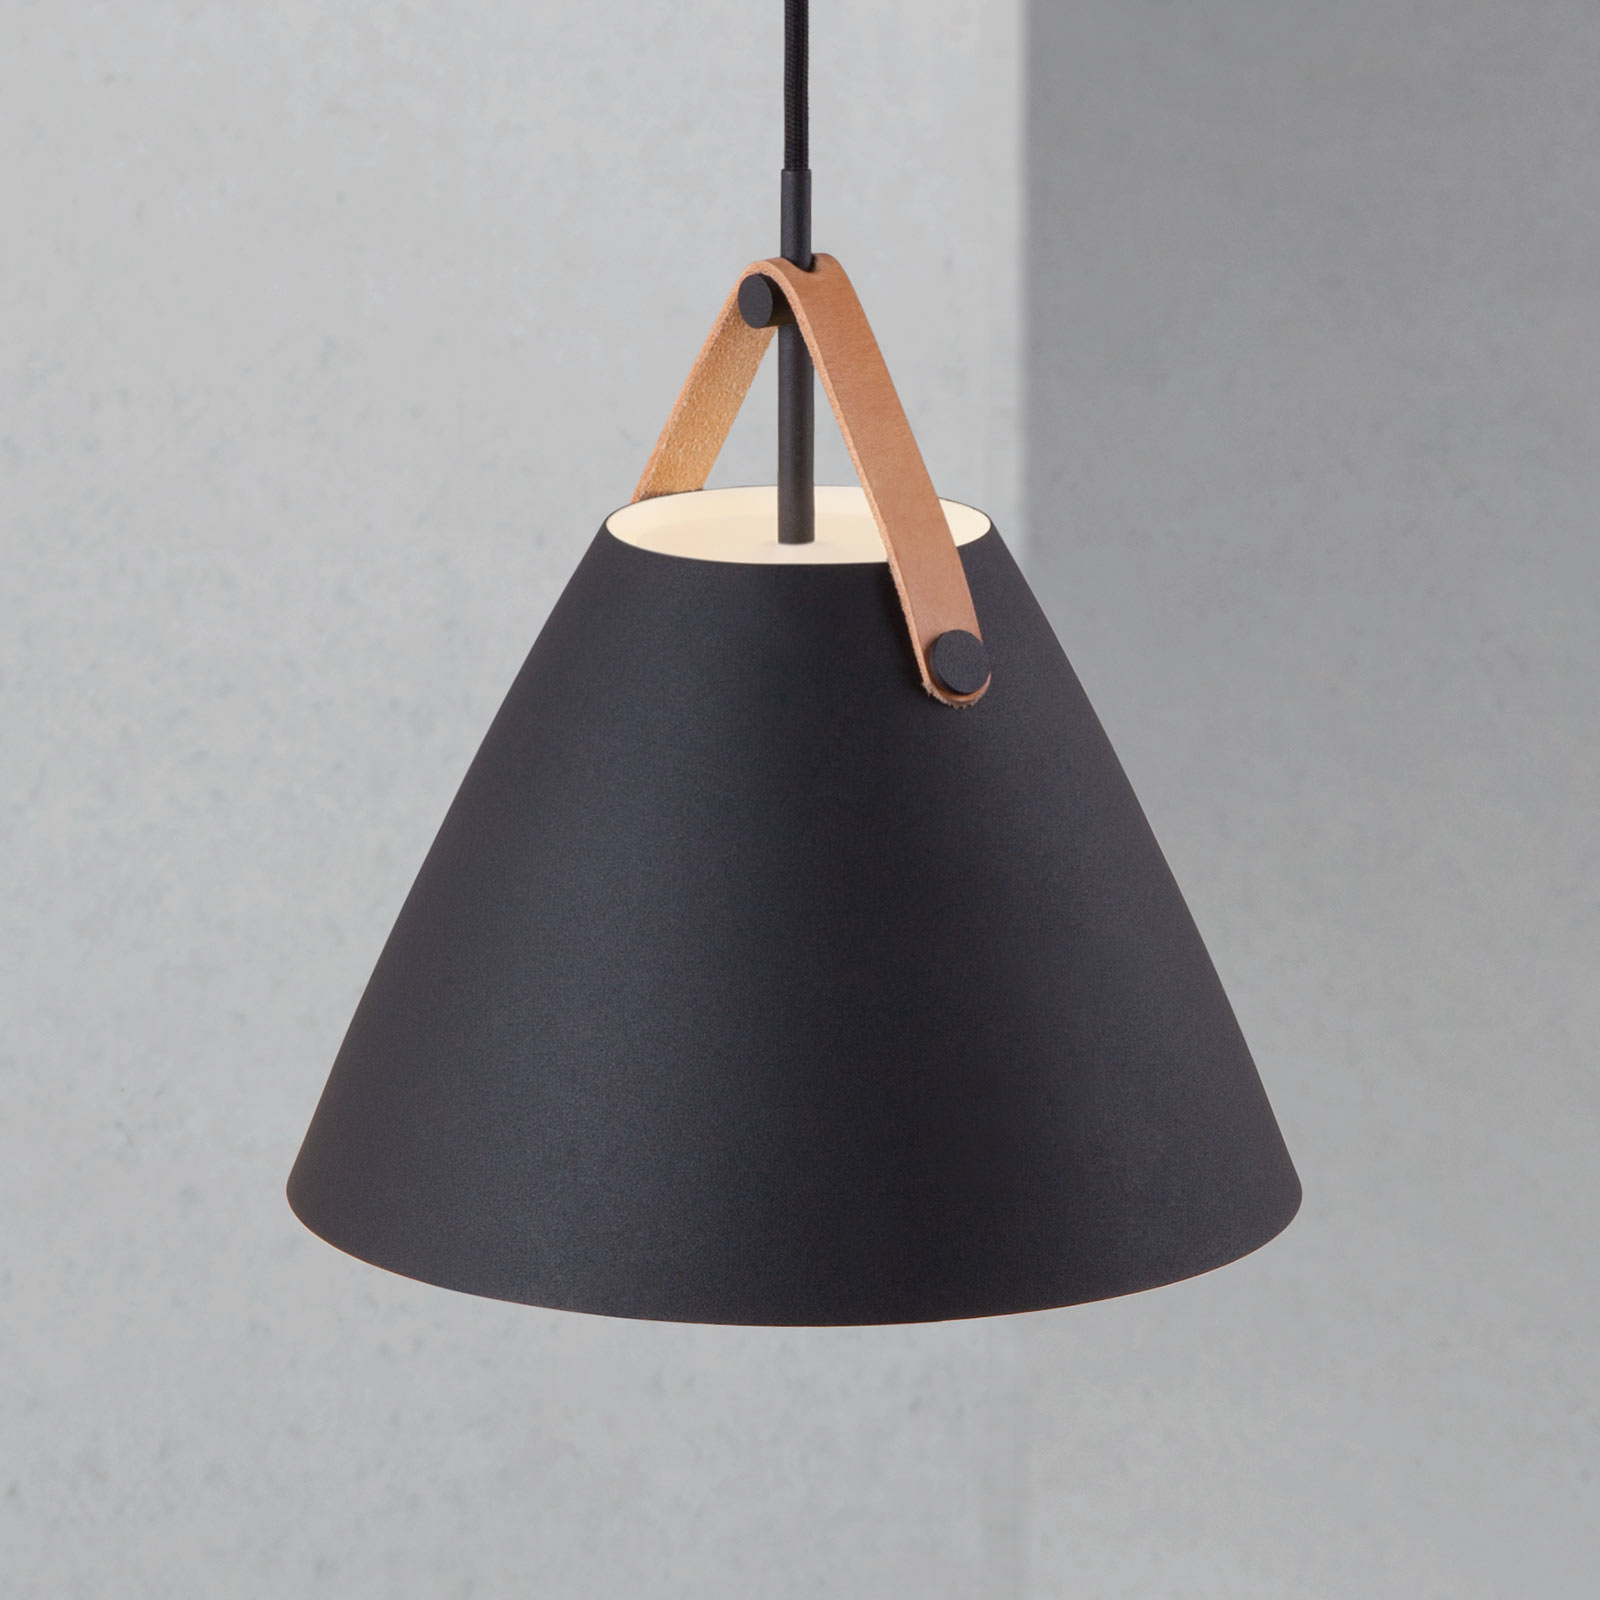 Strap hanging light in black, Ø 27 cm